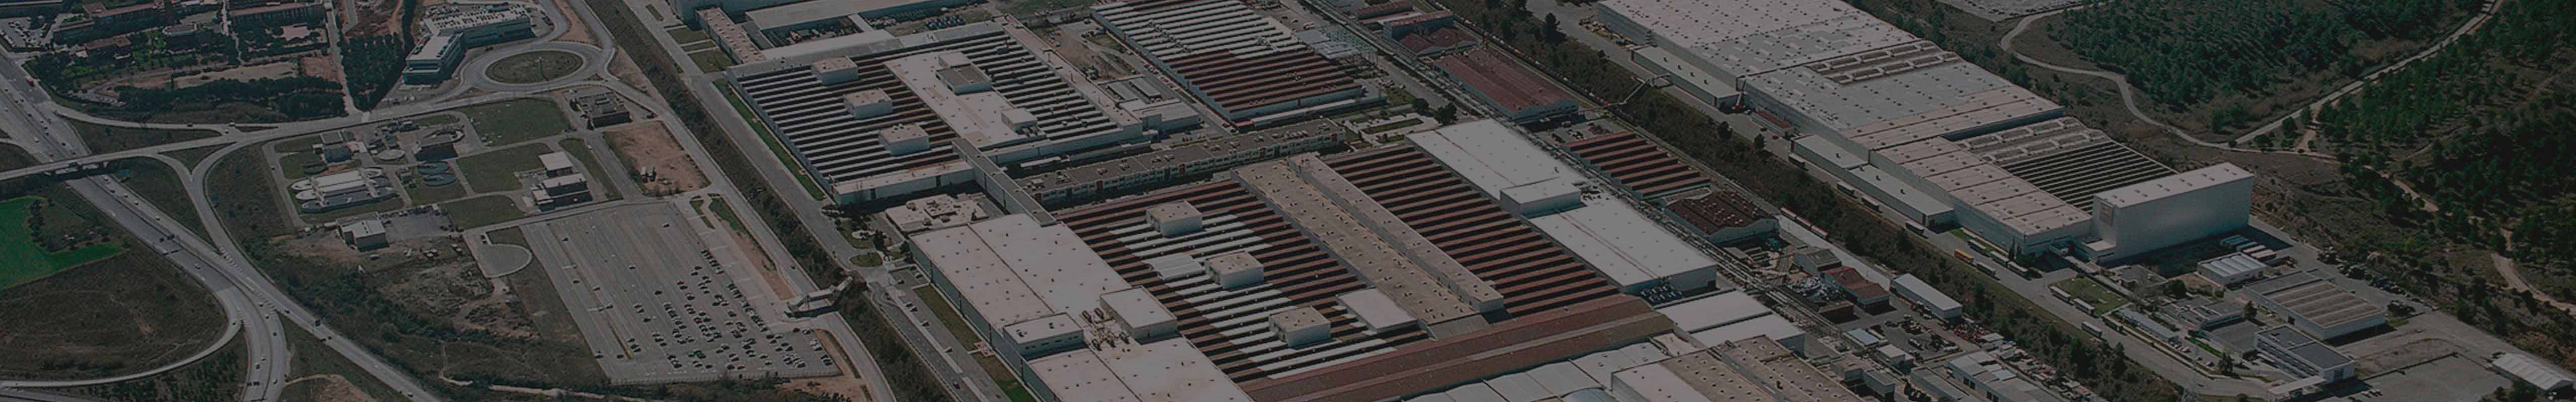 Luftbild der SEAT Produktionsanlage